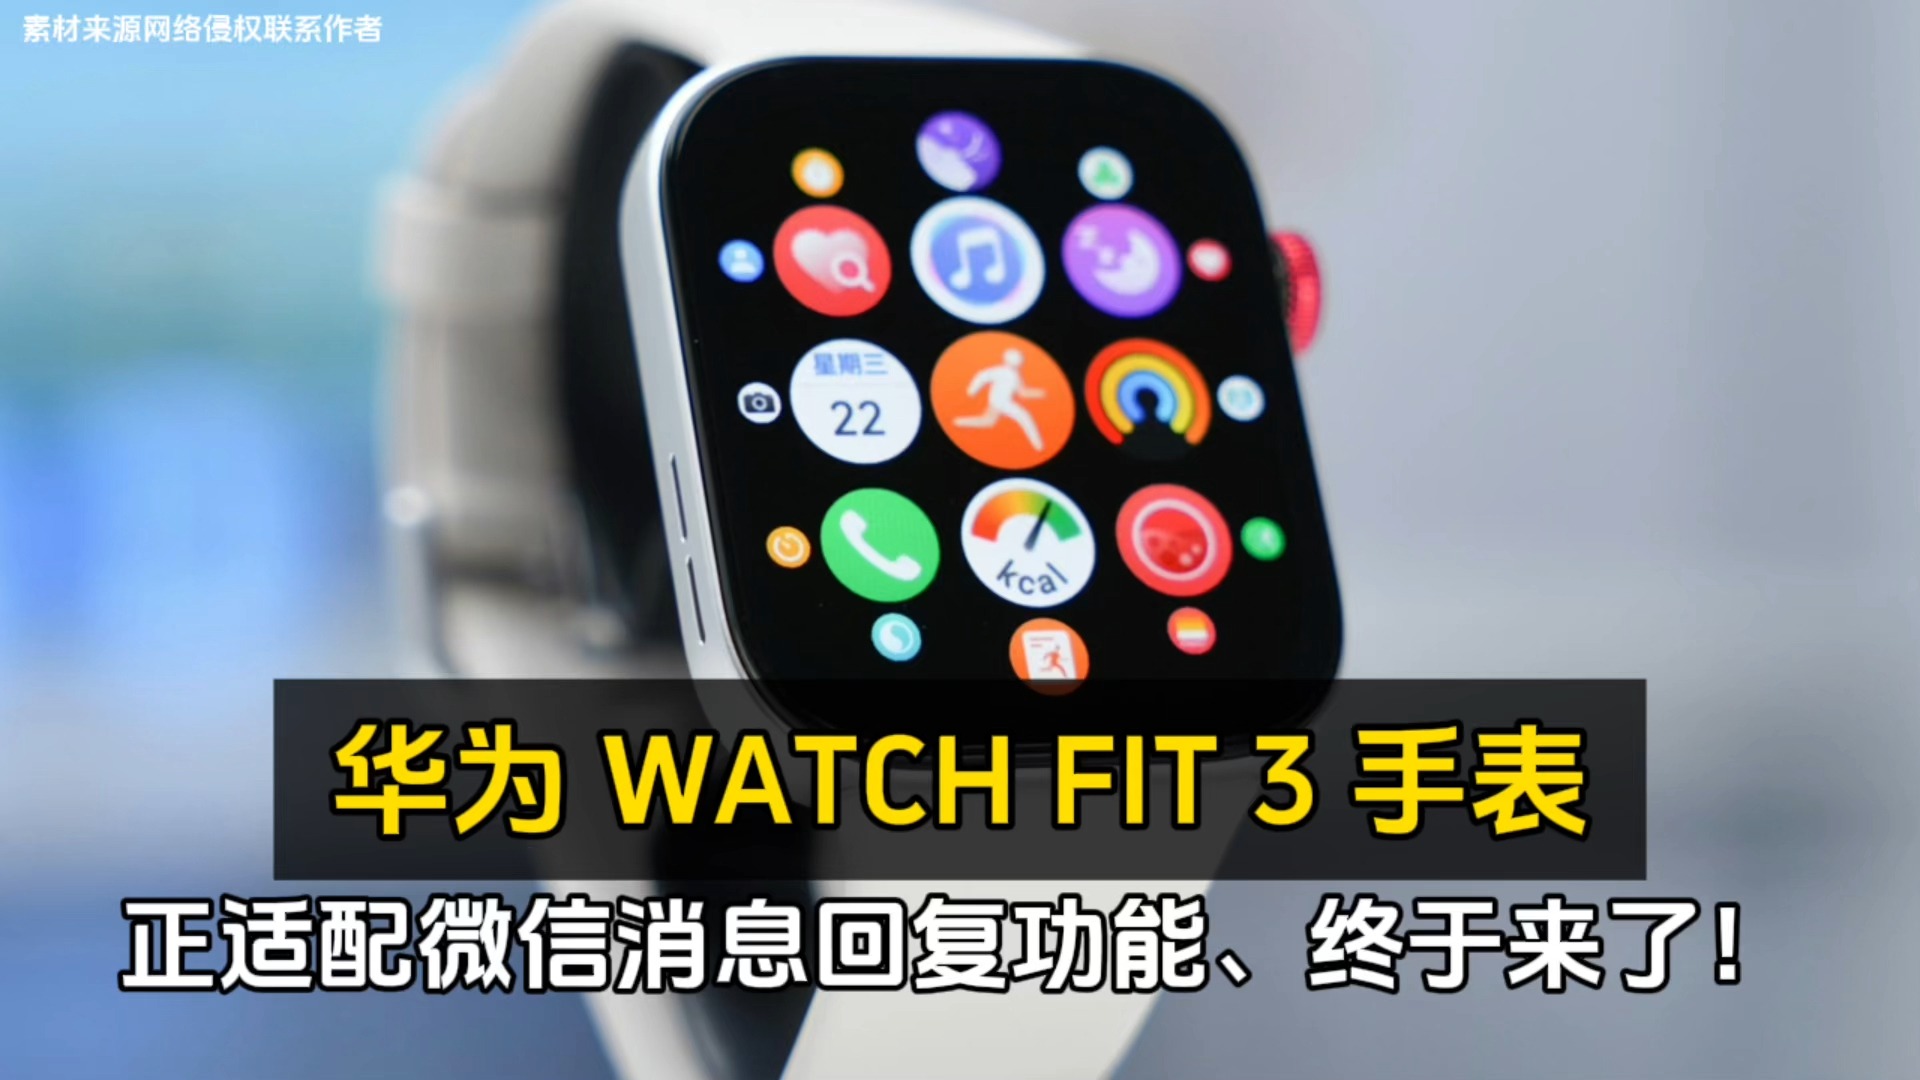 华为 WATCH FIT 3 手表正适配微信消息回复功能、终于来了！